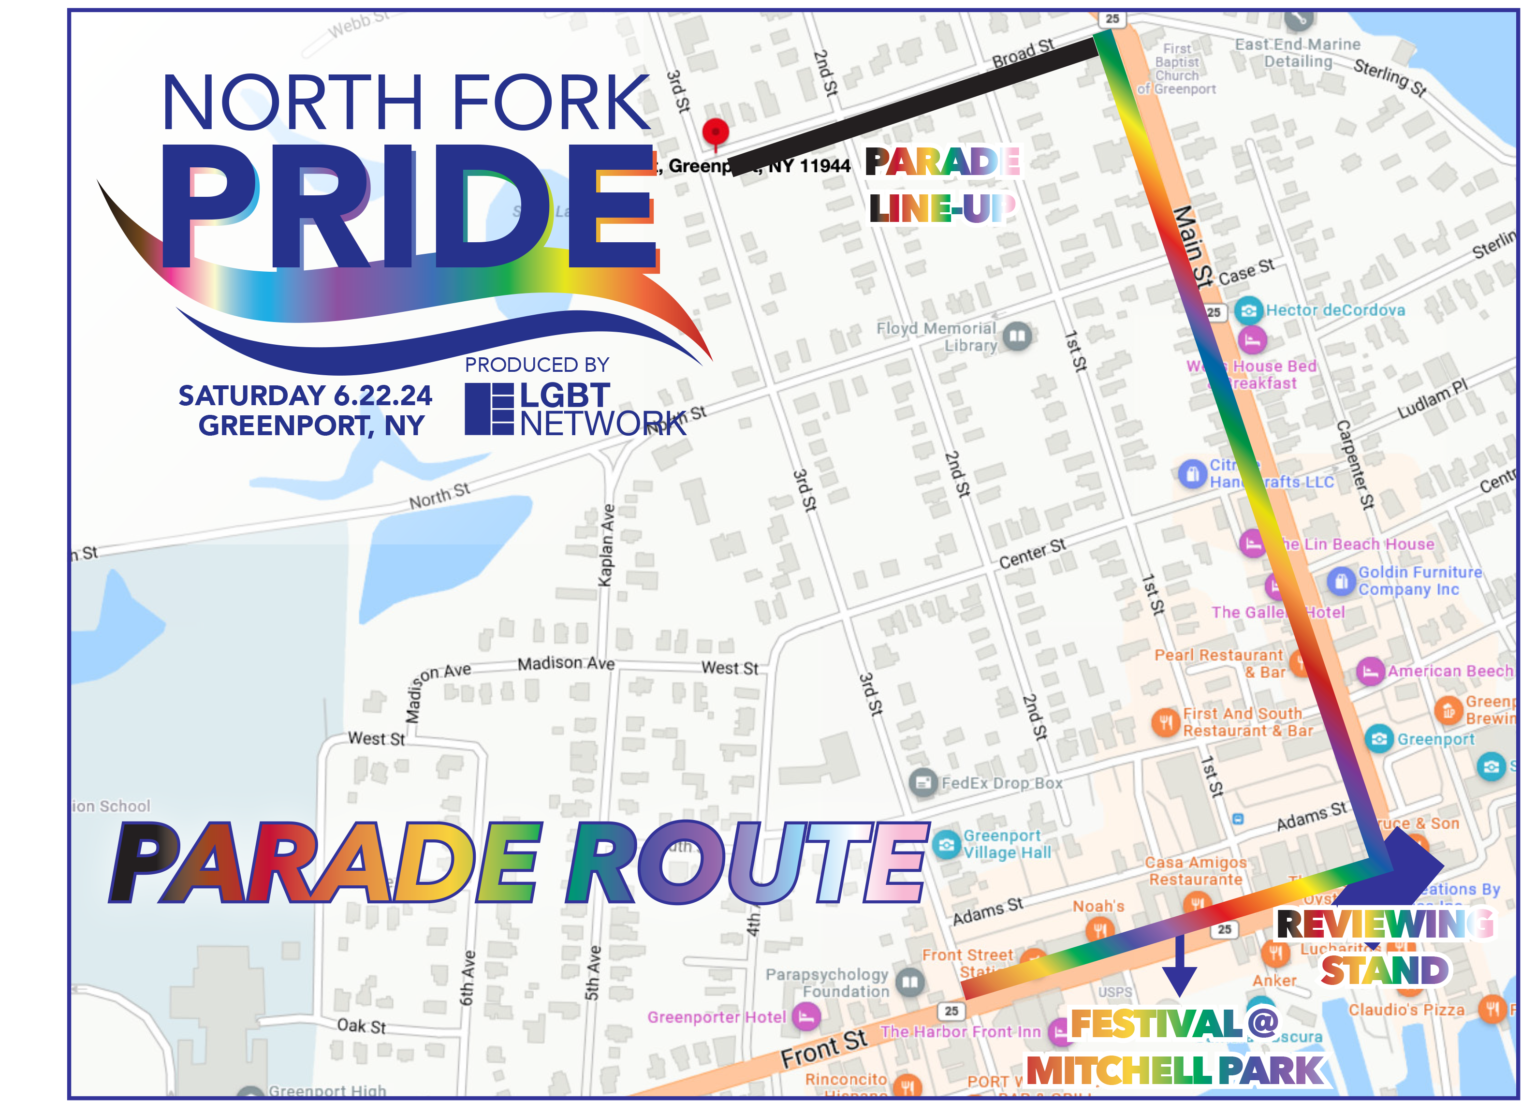 North Fork Pride Annual Pride Parade and Festival.